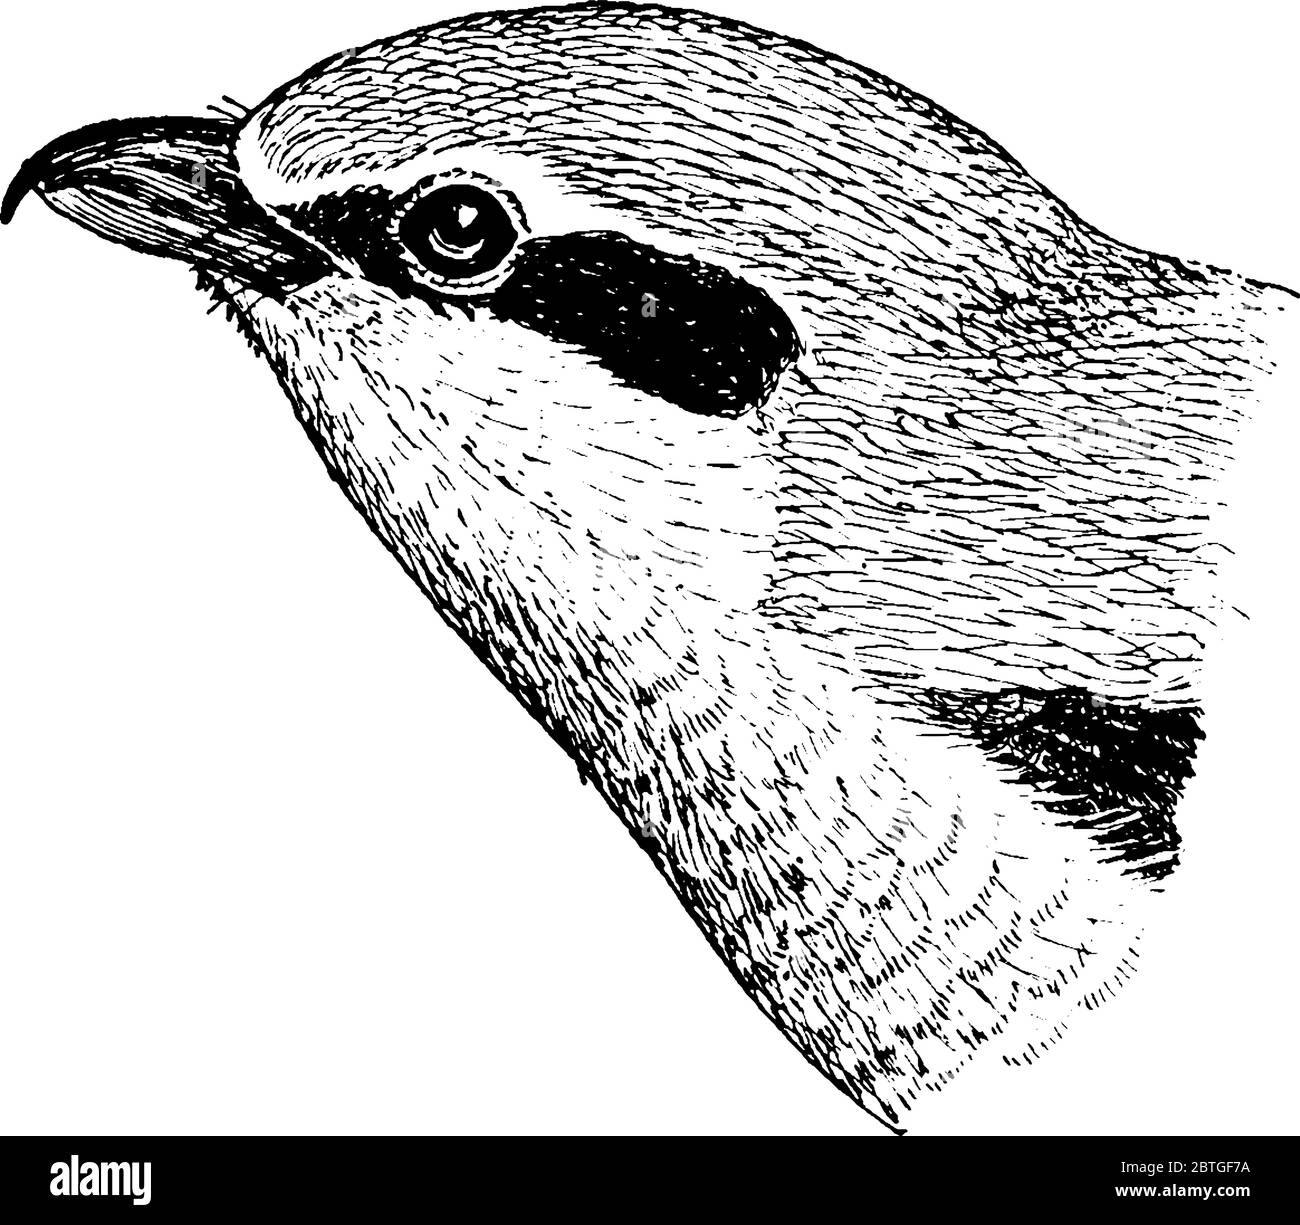 Der einsame Vogel, der große Grauwürger, ein Mitglied der Familie der Würger, Vintage-Strichzeichnung oder Gravurzeichnung. Stock Vektor